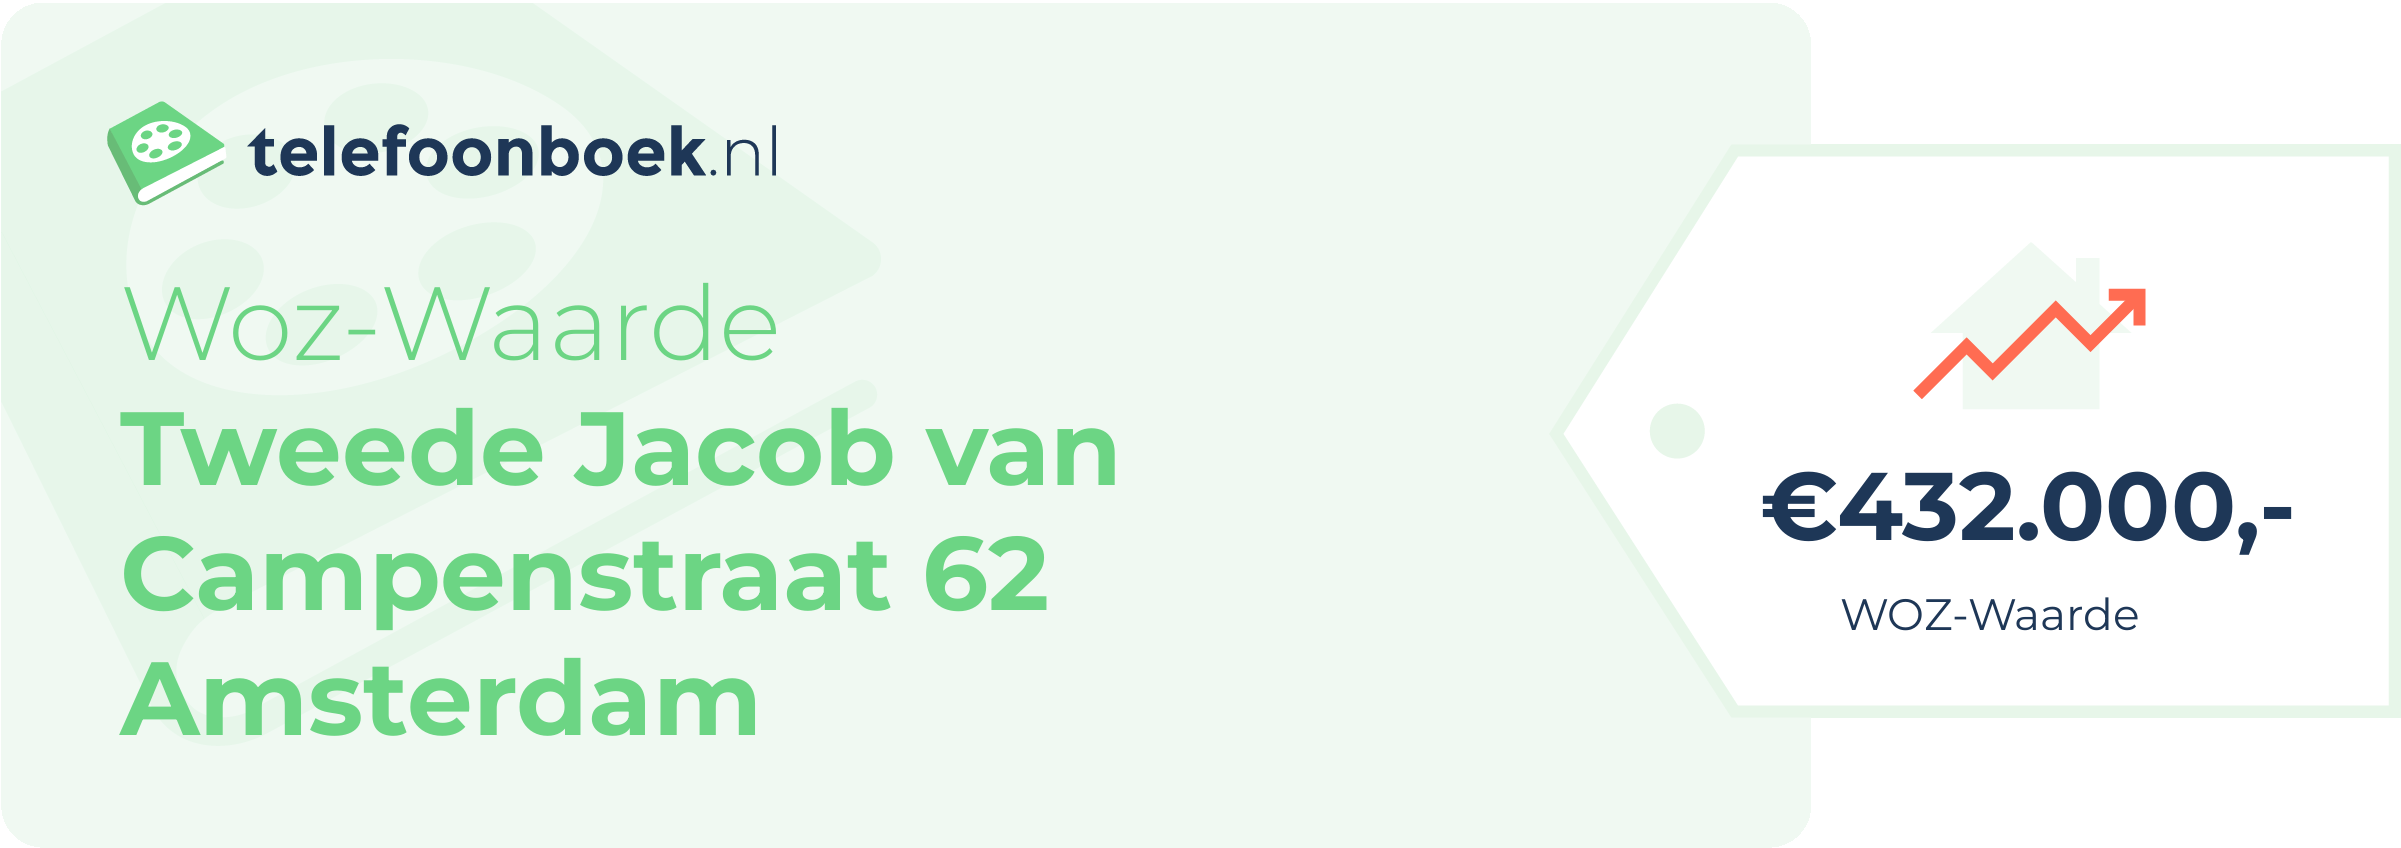 WOZ-waarde Tweede Jacob Van Campenstraat 62 Amsterdam